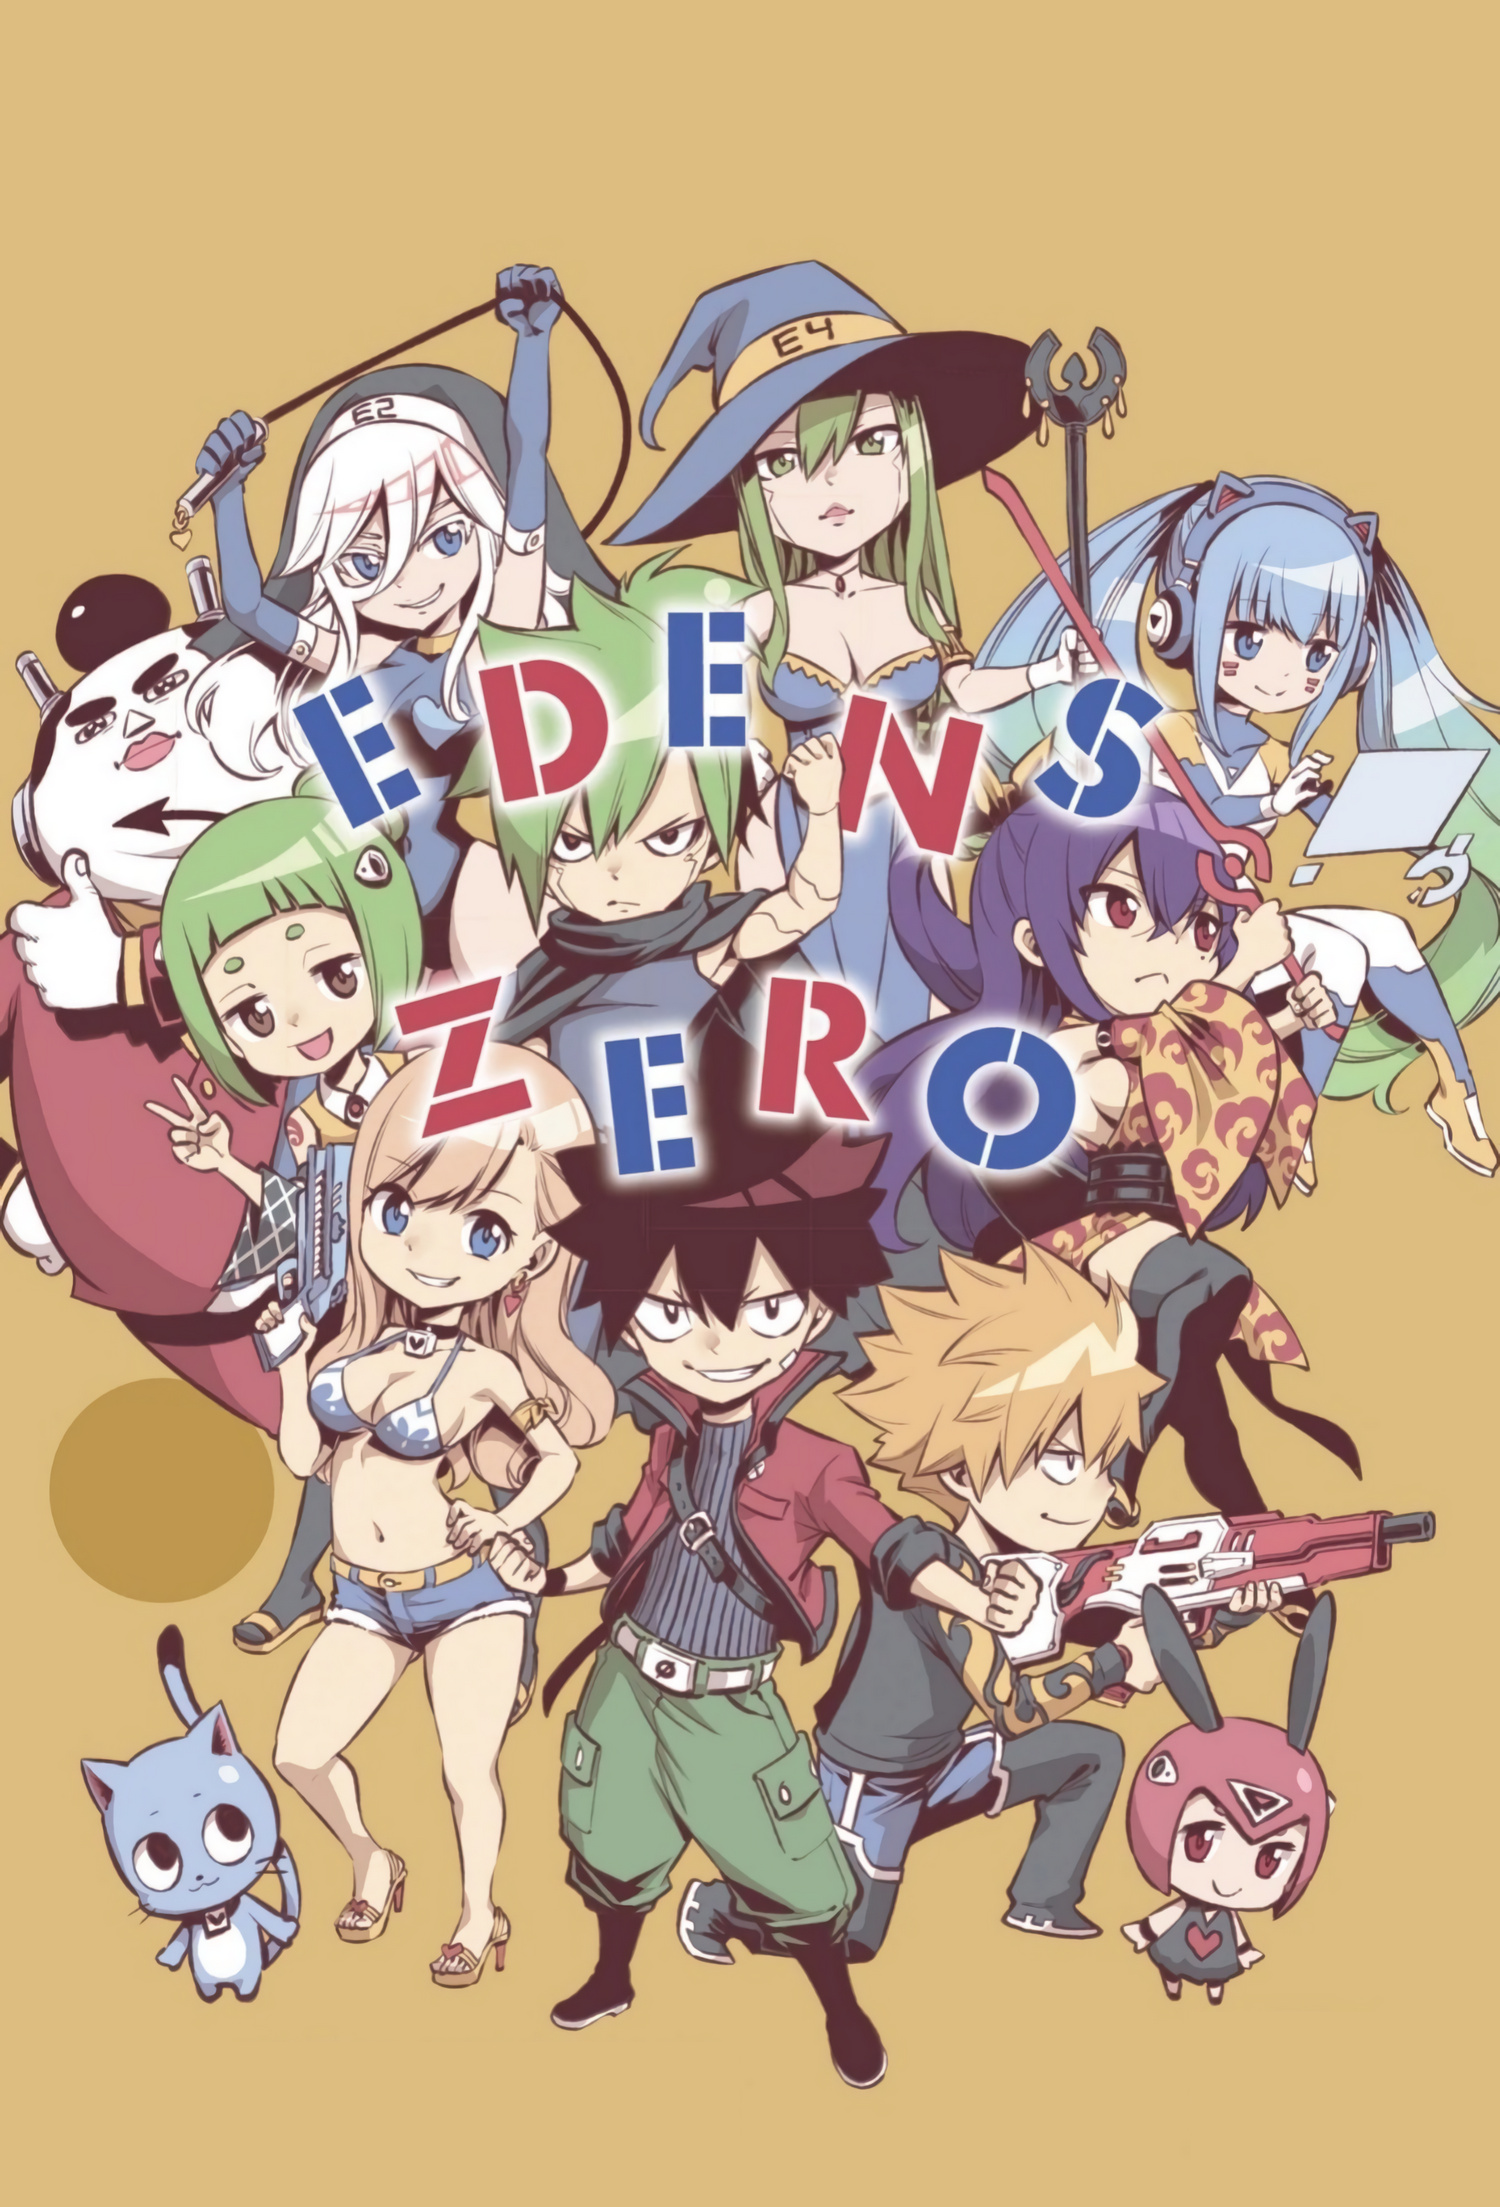 Edens Zero